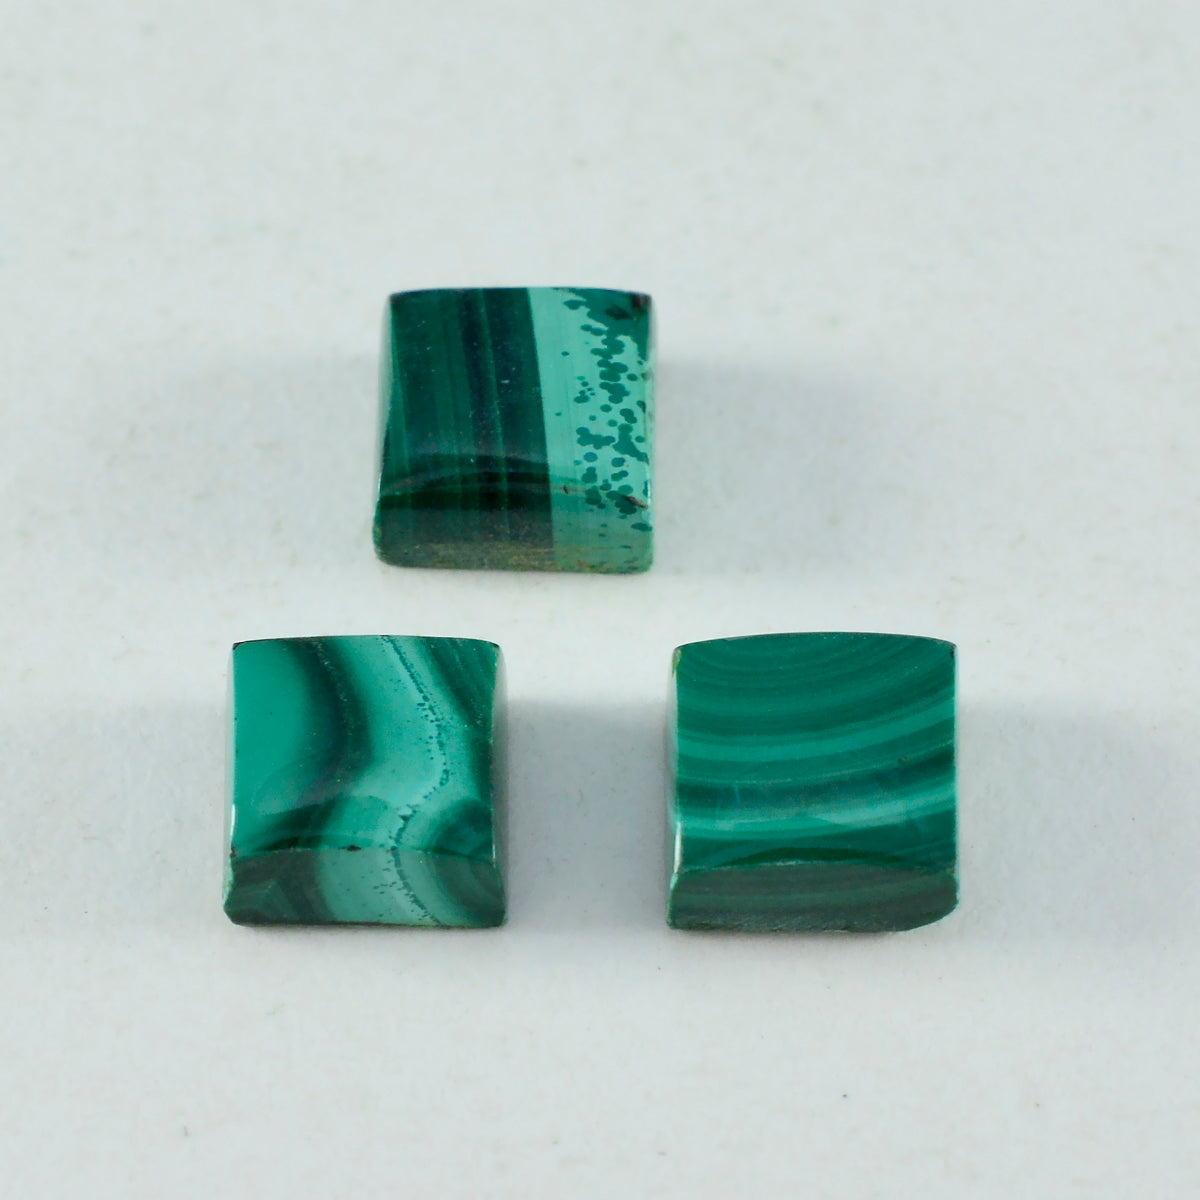 Riyogems 1PC groene malachiet cabochon 15x15 mm vierkante vorm edelstenen van goede kwaliteit